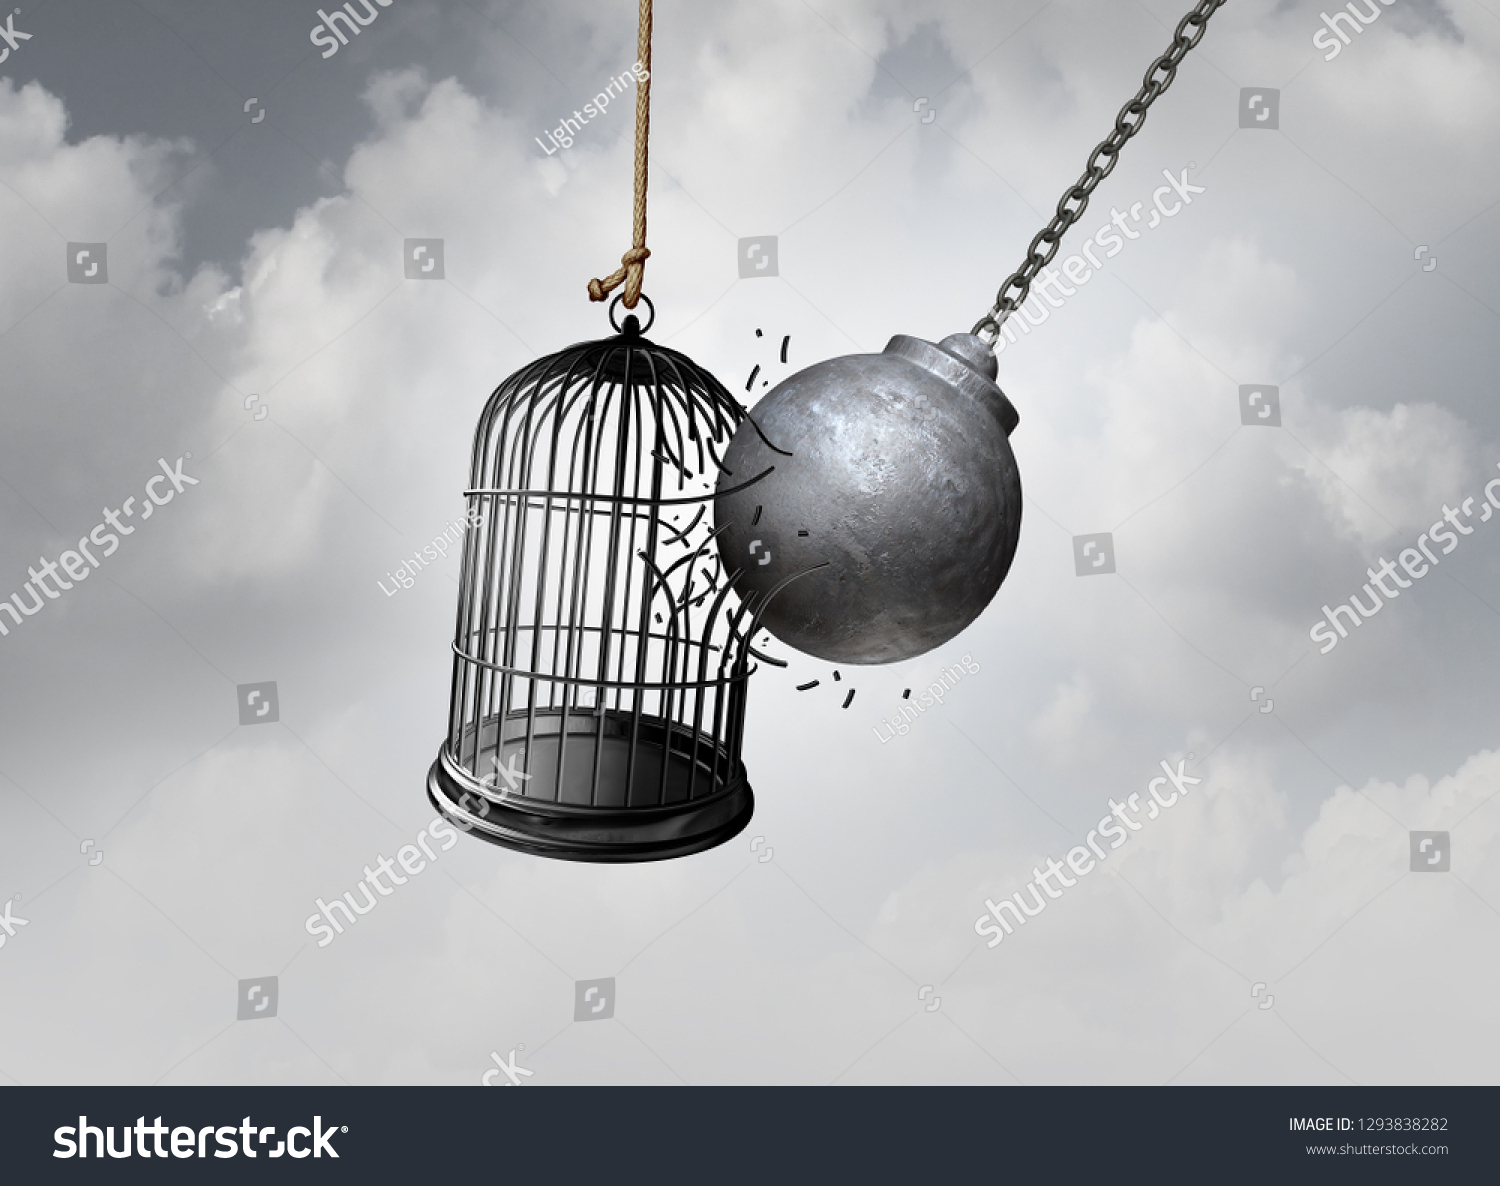 フリーダム ケージとブレイク フリー コンセプトは 3dイラストとしての中毒や拘禁の希望を逃れる抽象的なアイデアとして 鳥かご を解放することで刑務所を開放するボールとしてのコンセプト のイラスト素材 1293